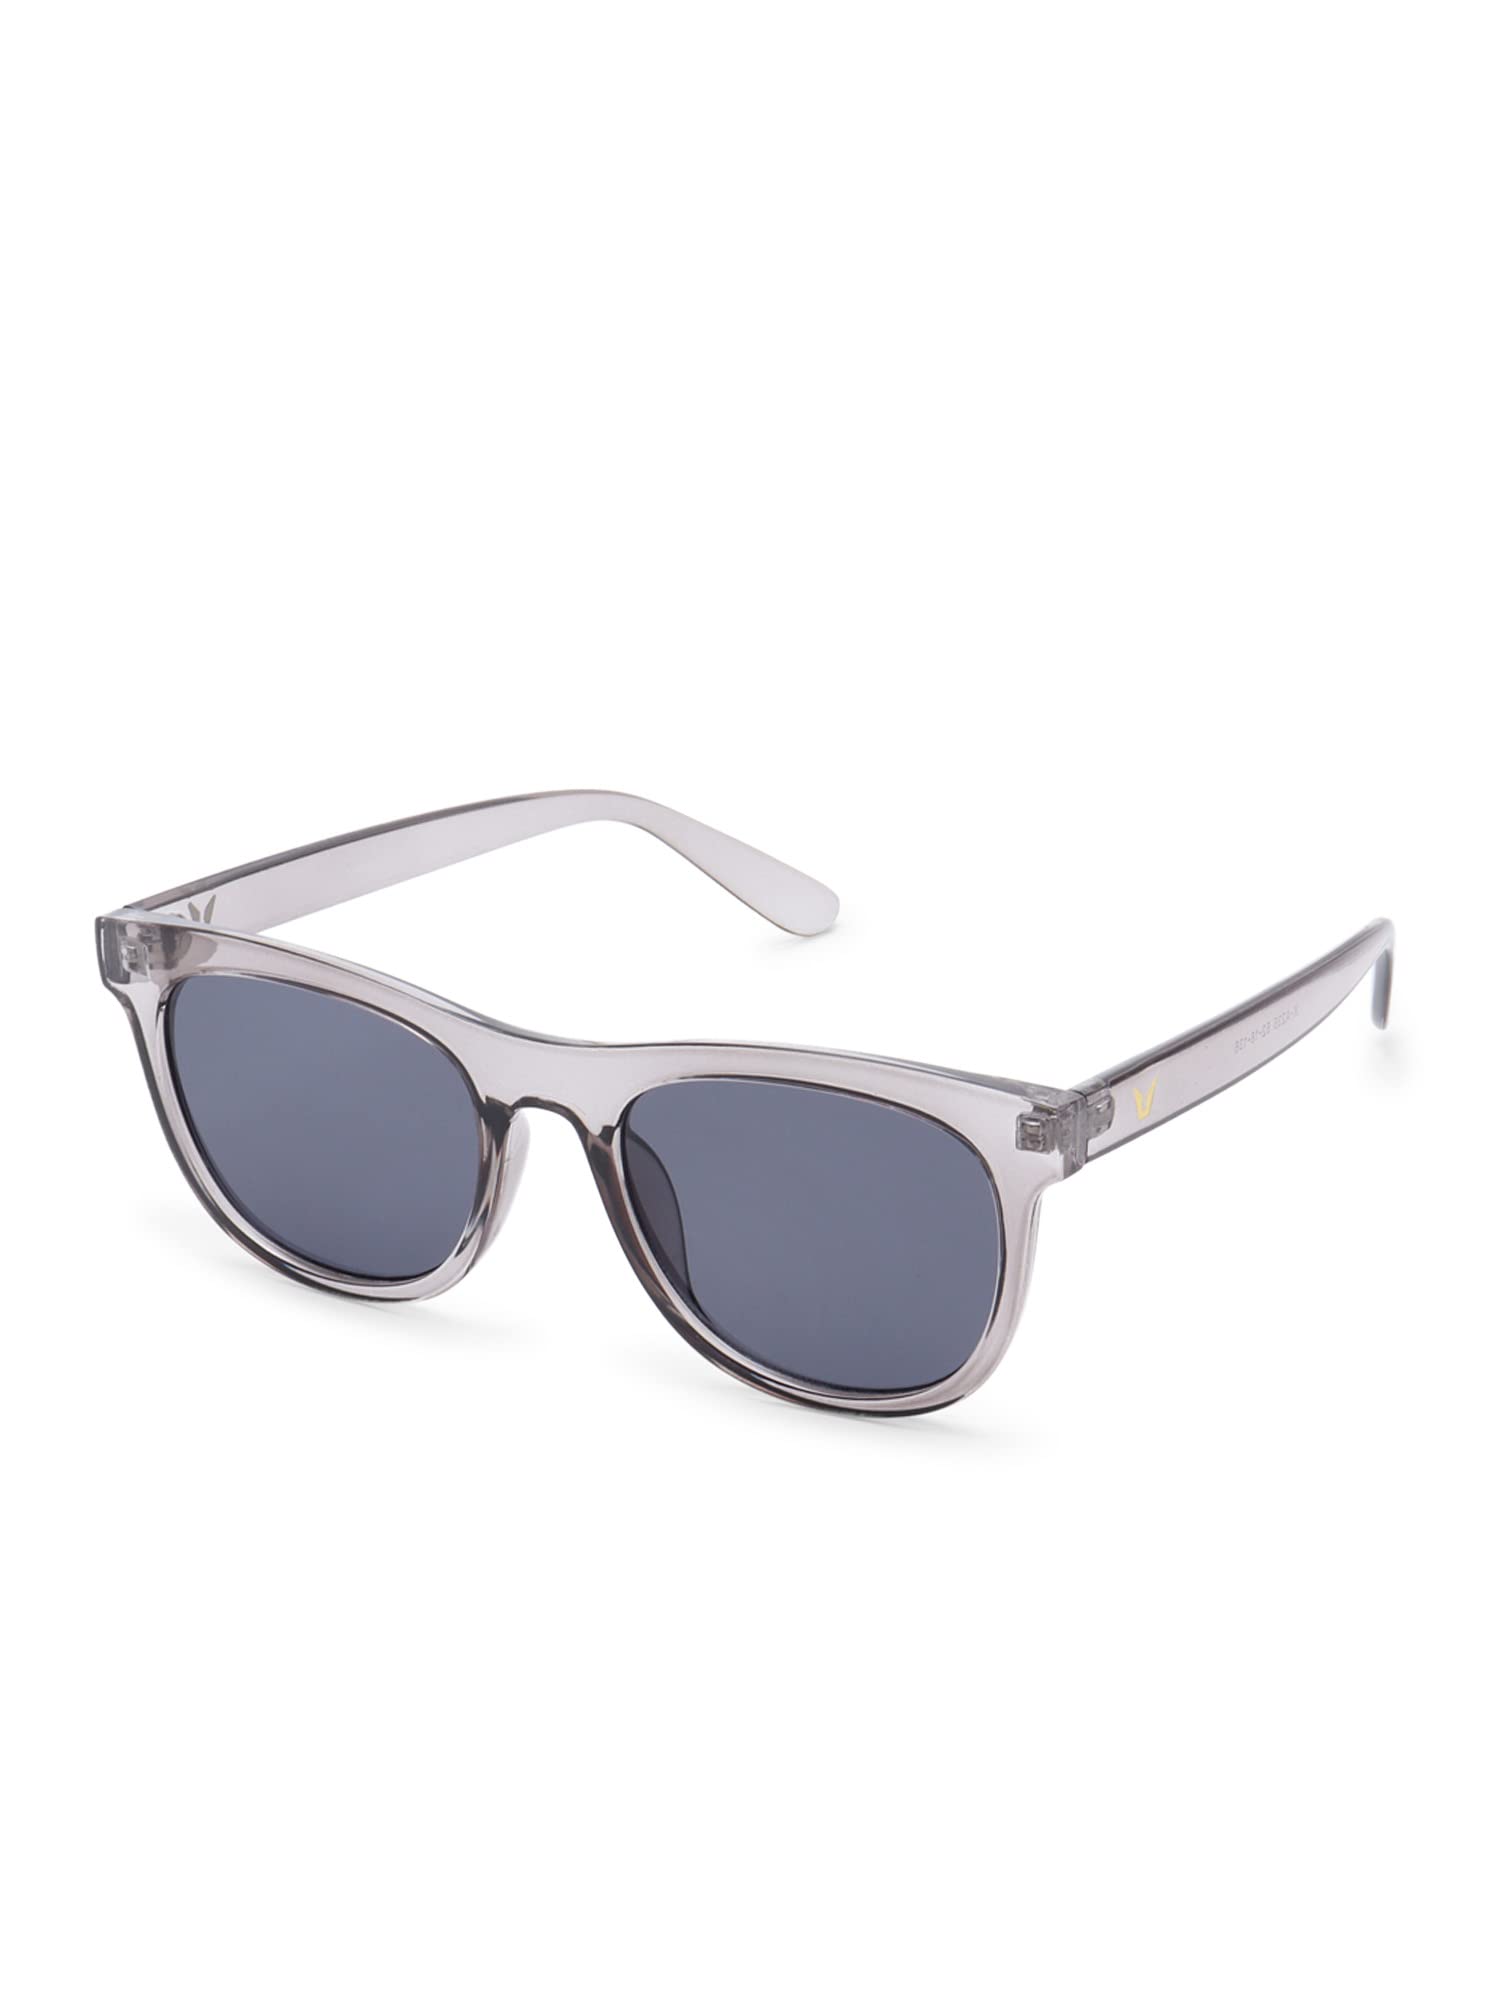 Intellilens Wayfarer Polarized & UV Protected Sunglasses For Men